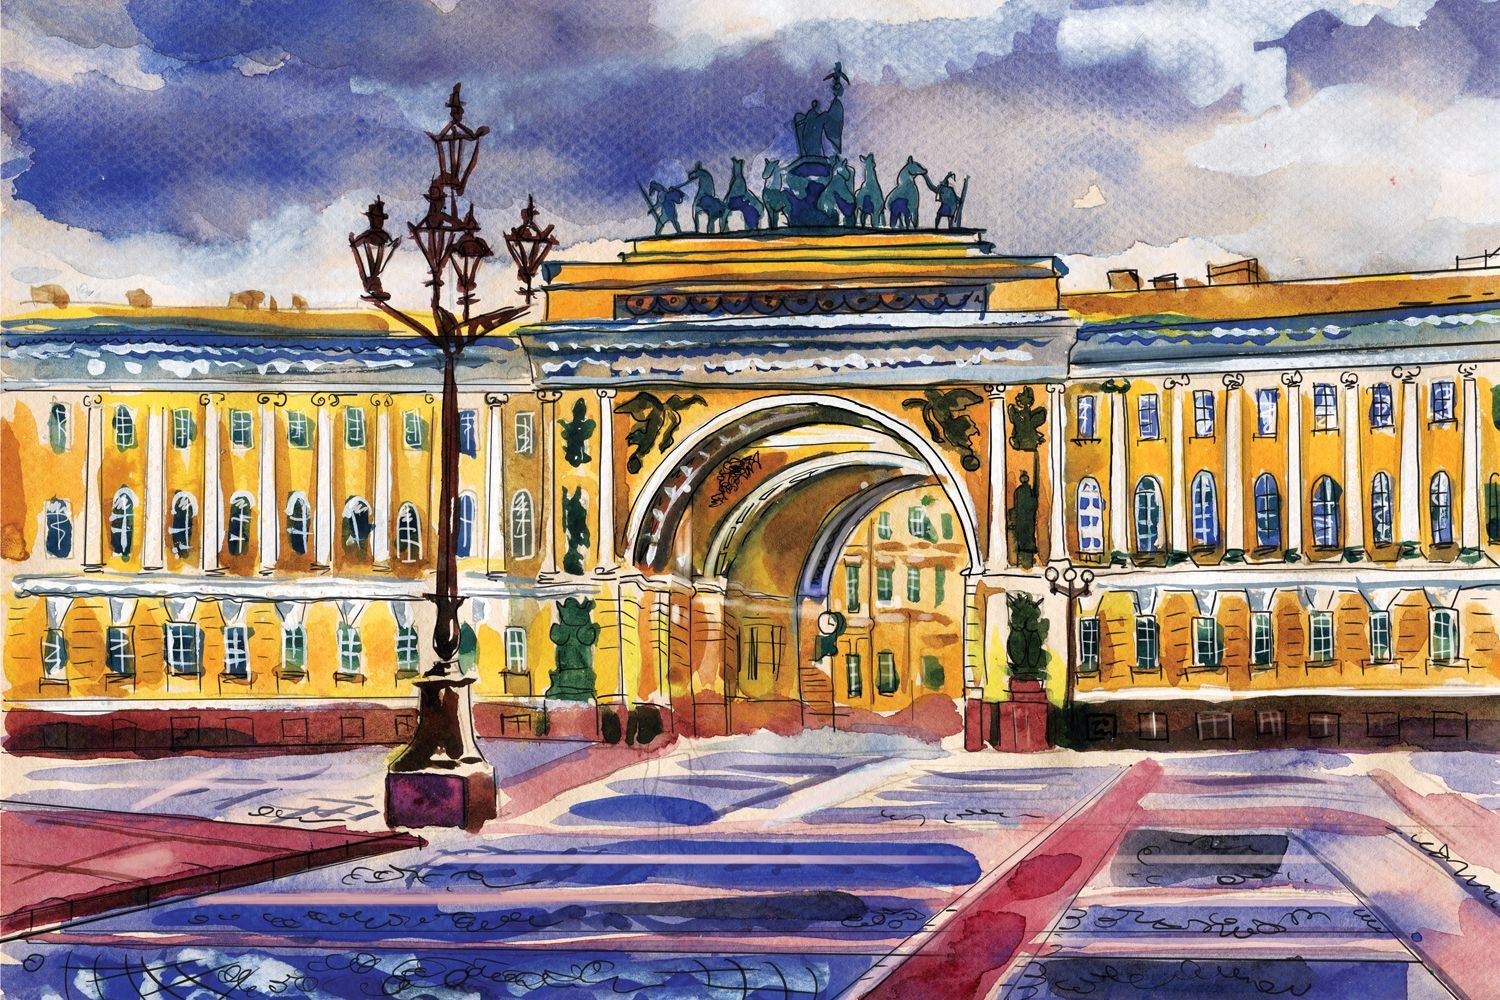 Дворцовая площадь в Санкт-Петербурге рисунок